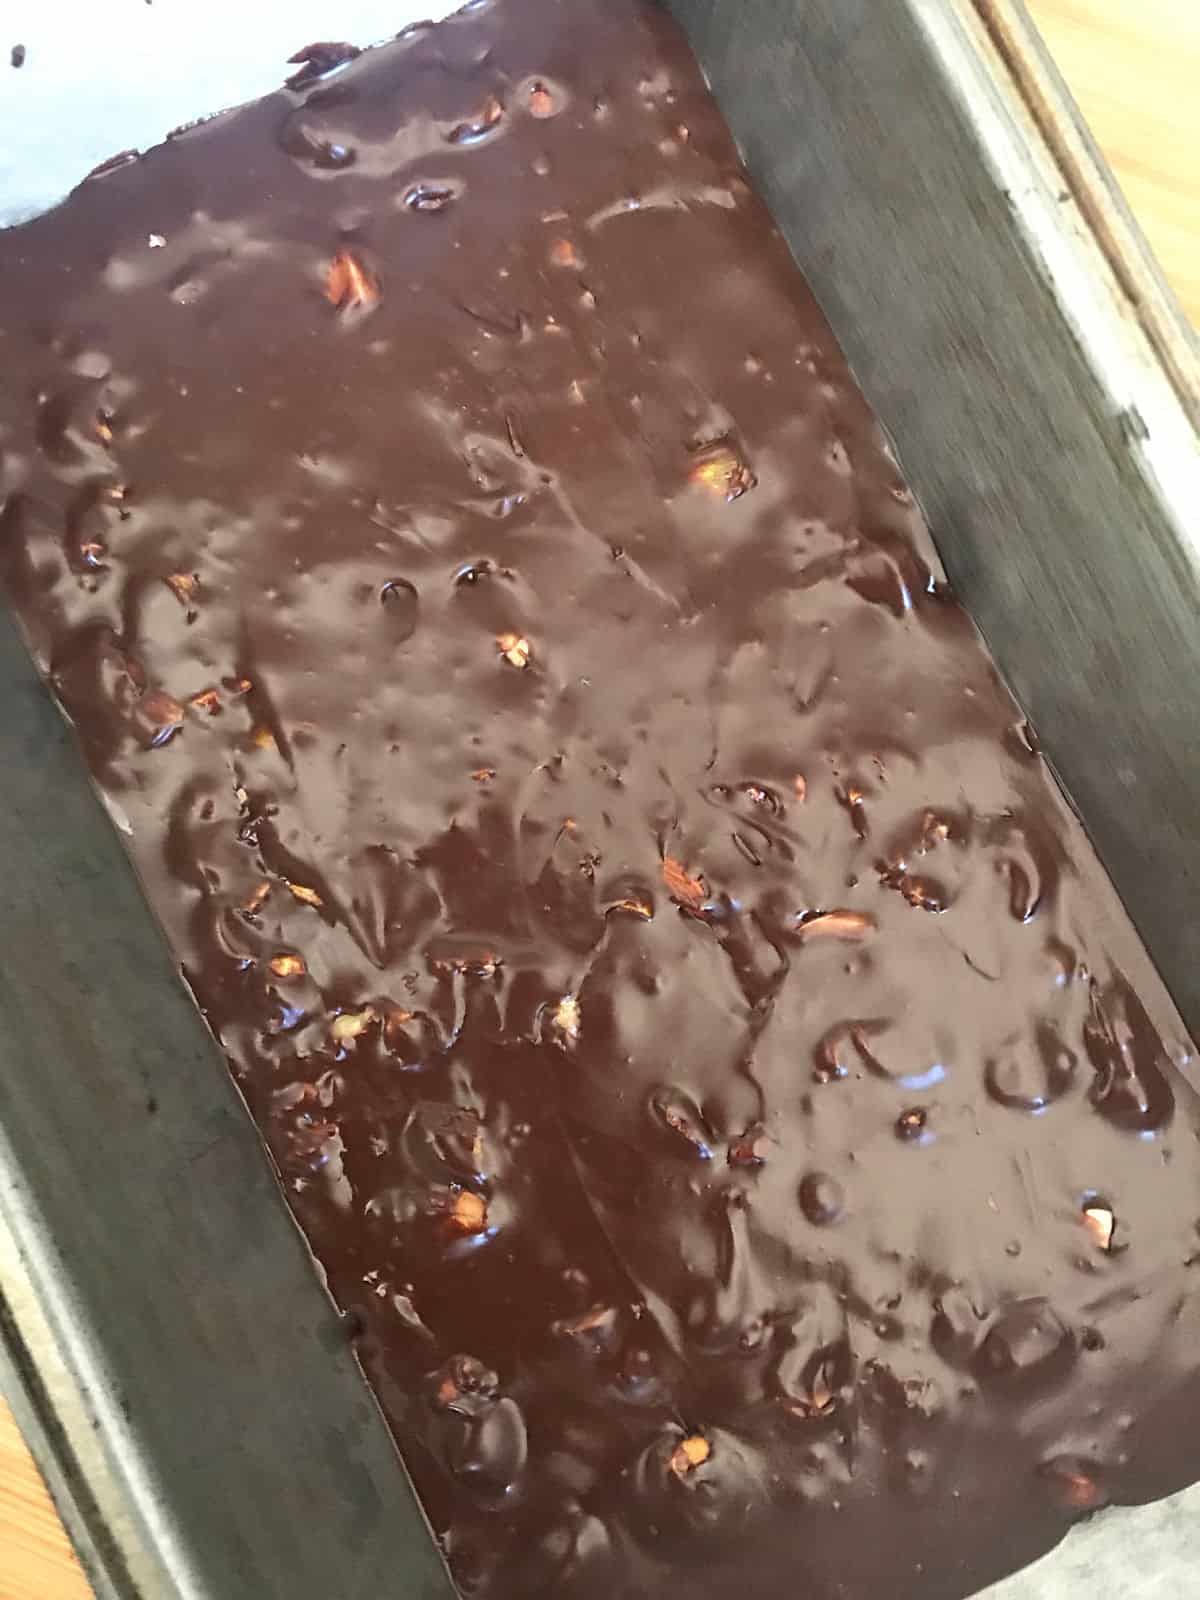 Metal loaf pan with dark chocolate fudge mixture.